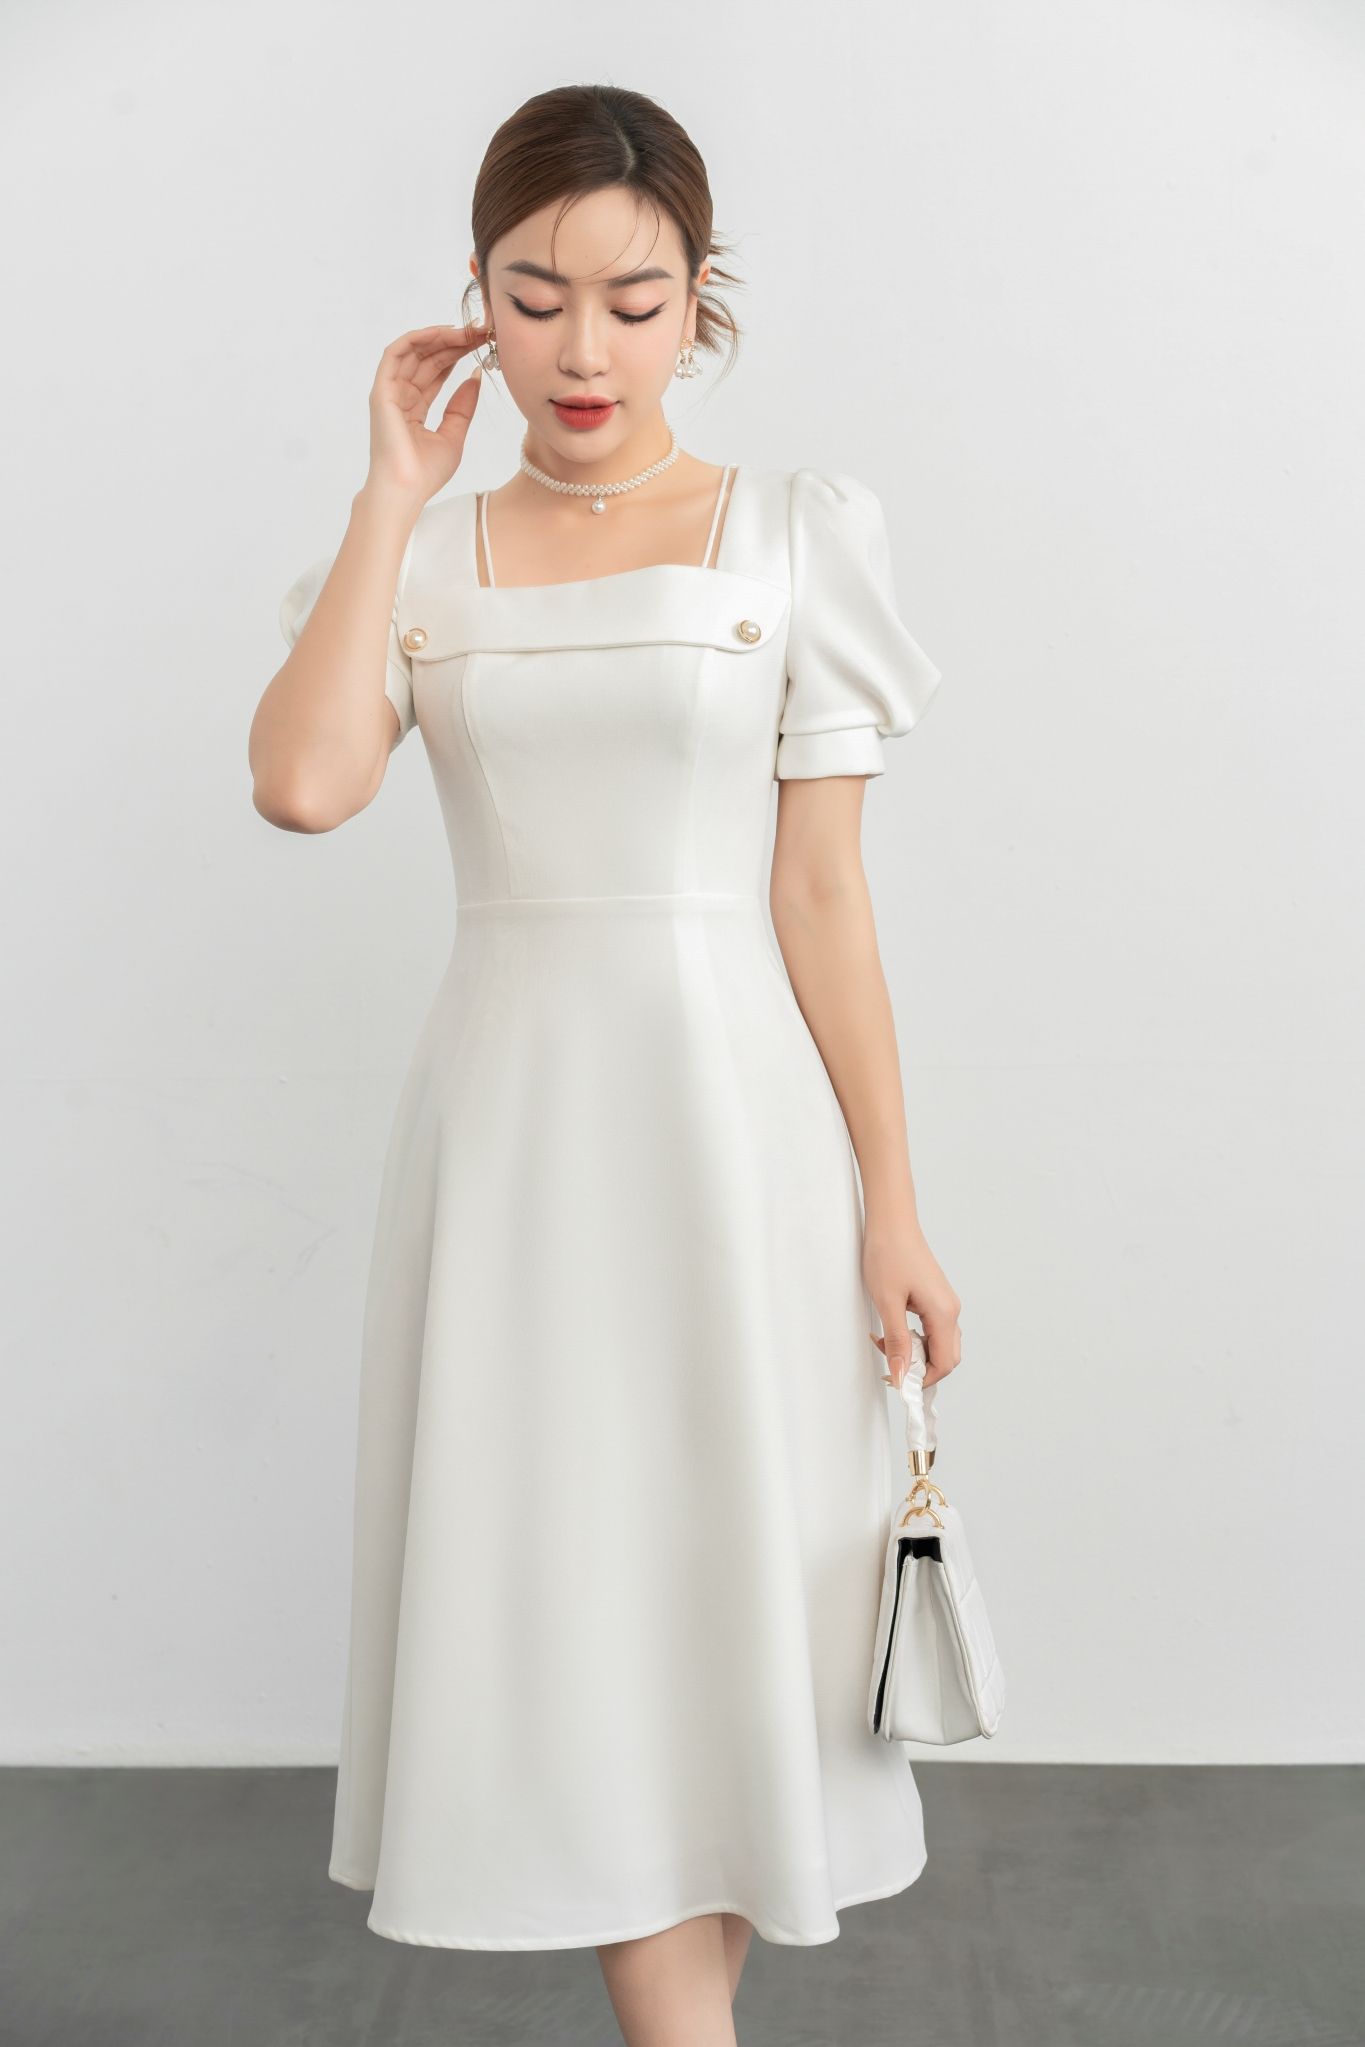 Đầm váy nữ maxi cổ vuông dài tay có 4màu Mới 100%, giá: 299.000đ, gọi:  0906878386, Huyện Bình Chánh - Hồ Chí Minh, id-a3171800